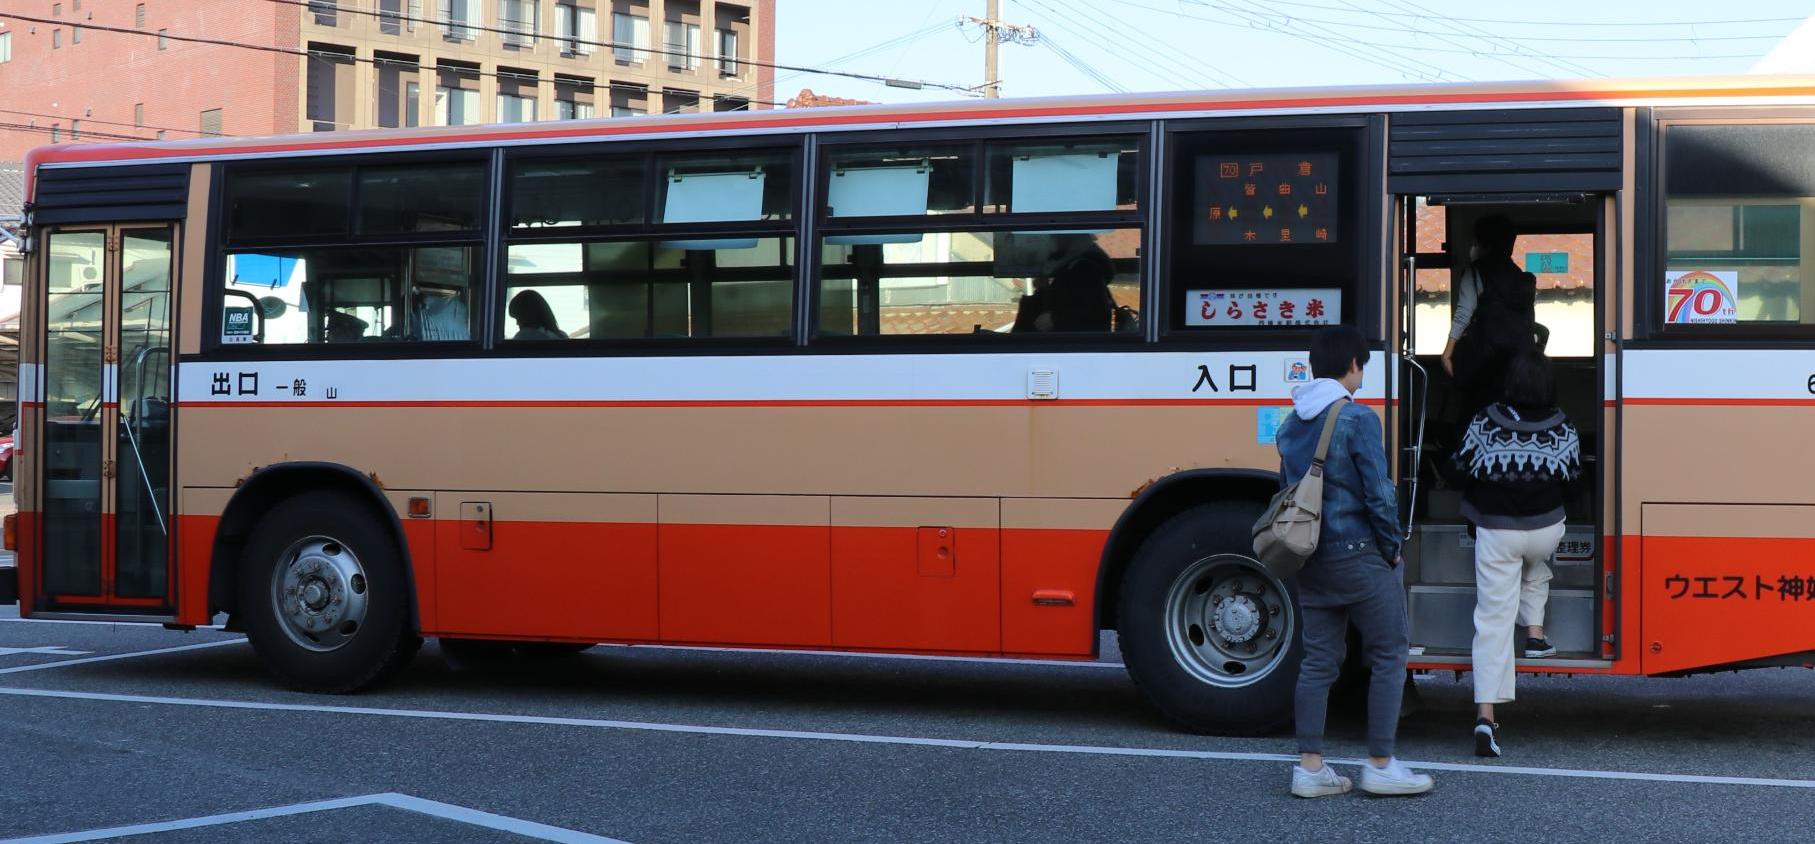 後部乗車口が開いた神姫バスに乗客が乗り込んでいる写真